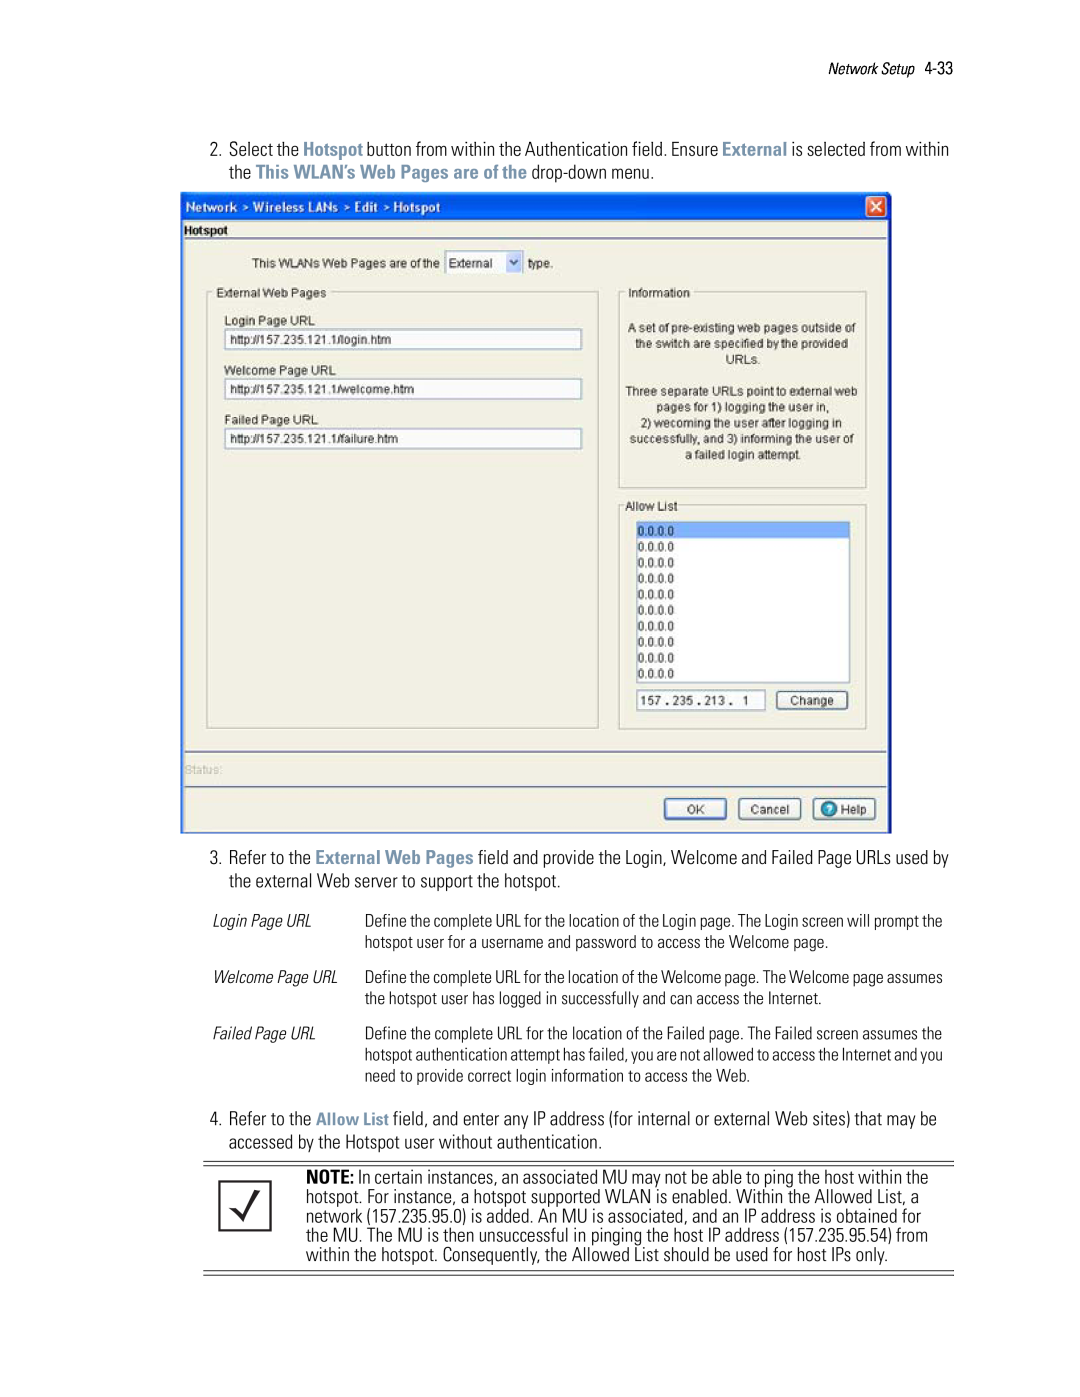 Motorola WS5100 manual Login Page URL 